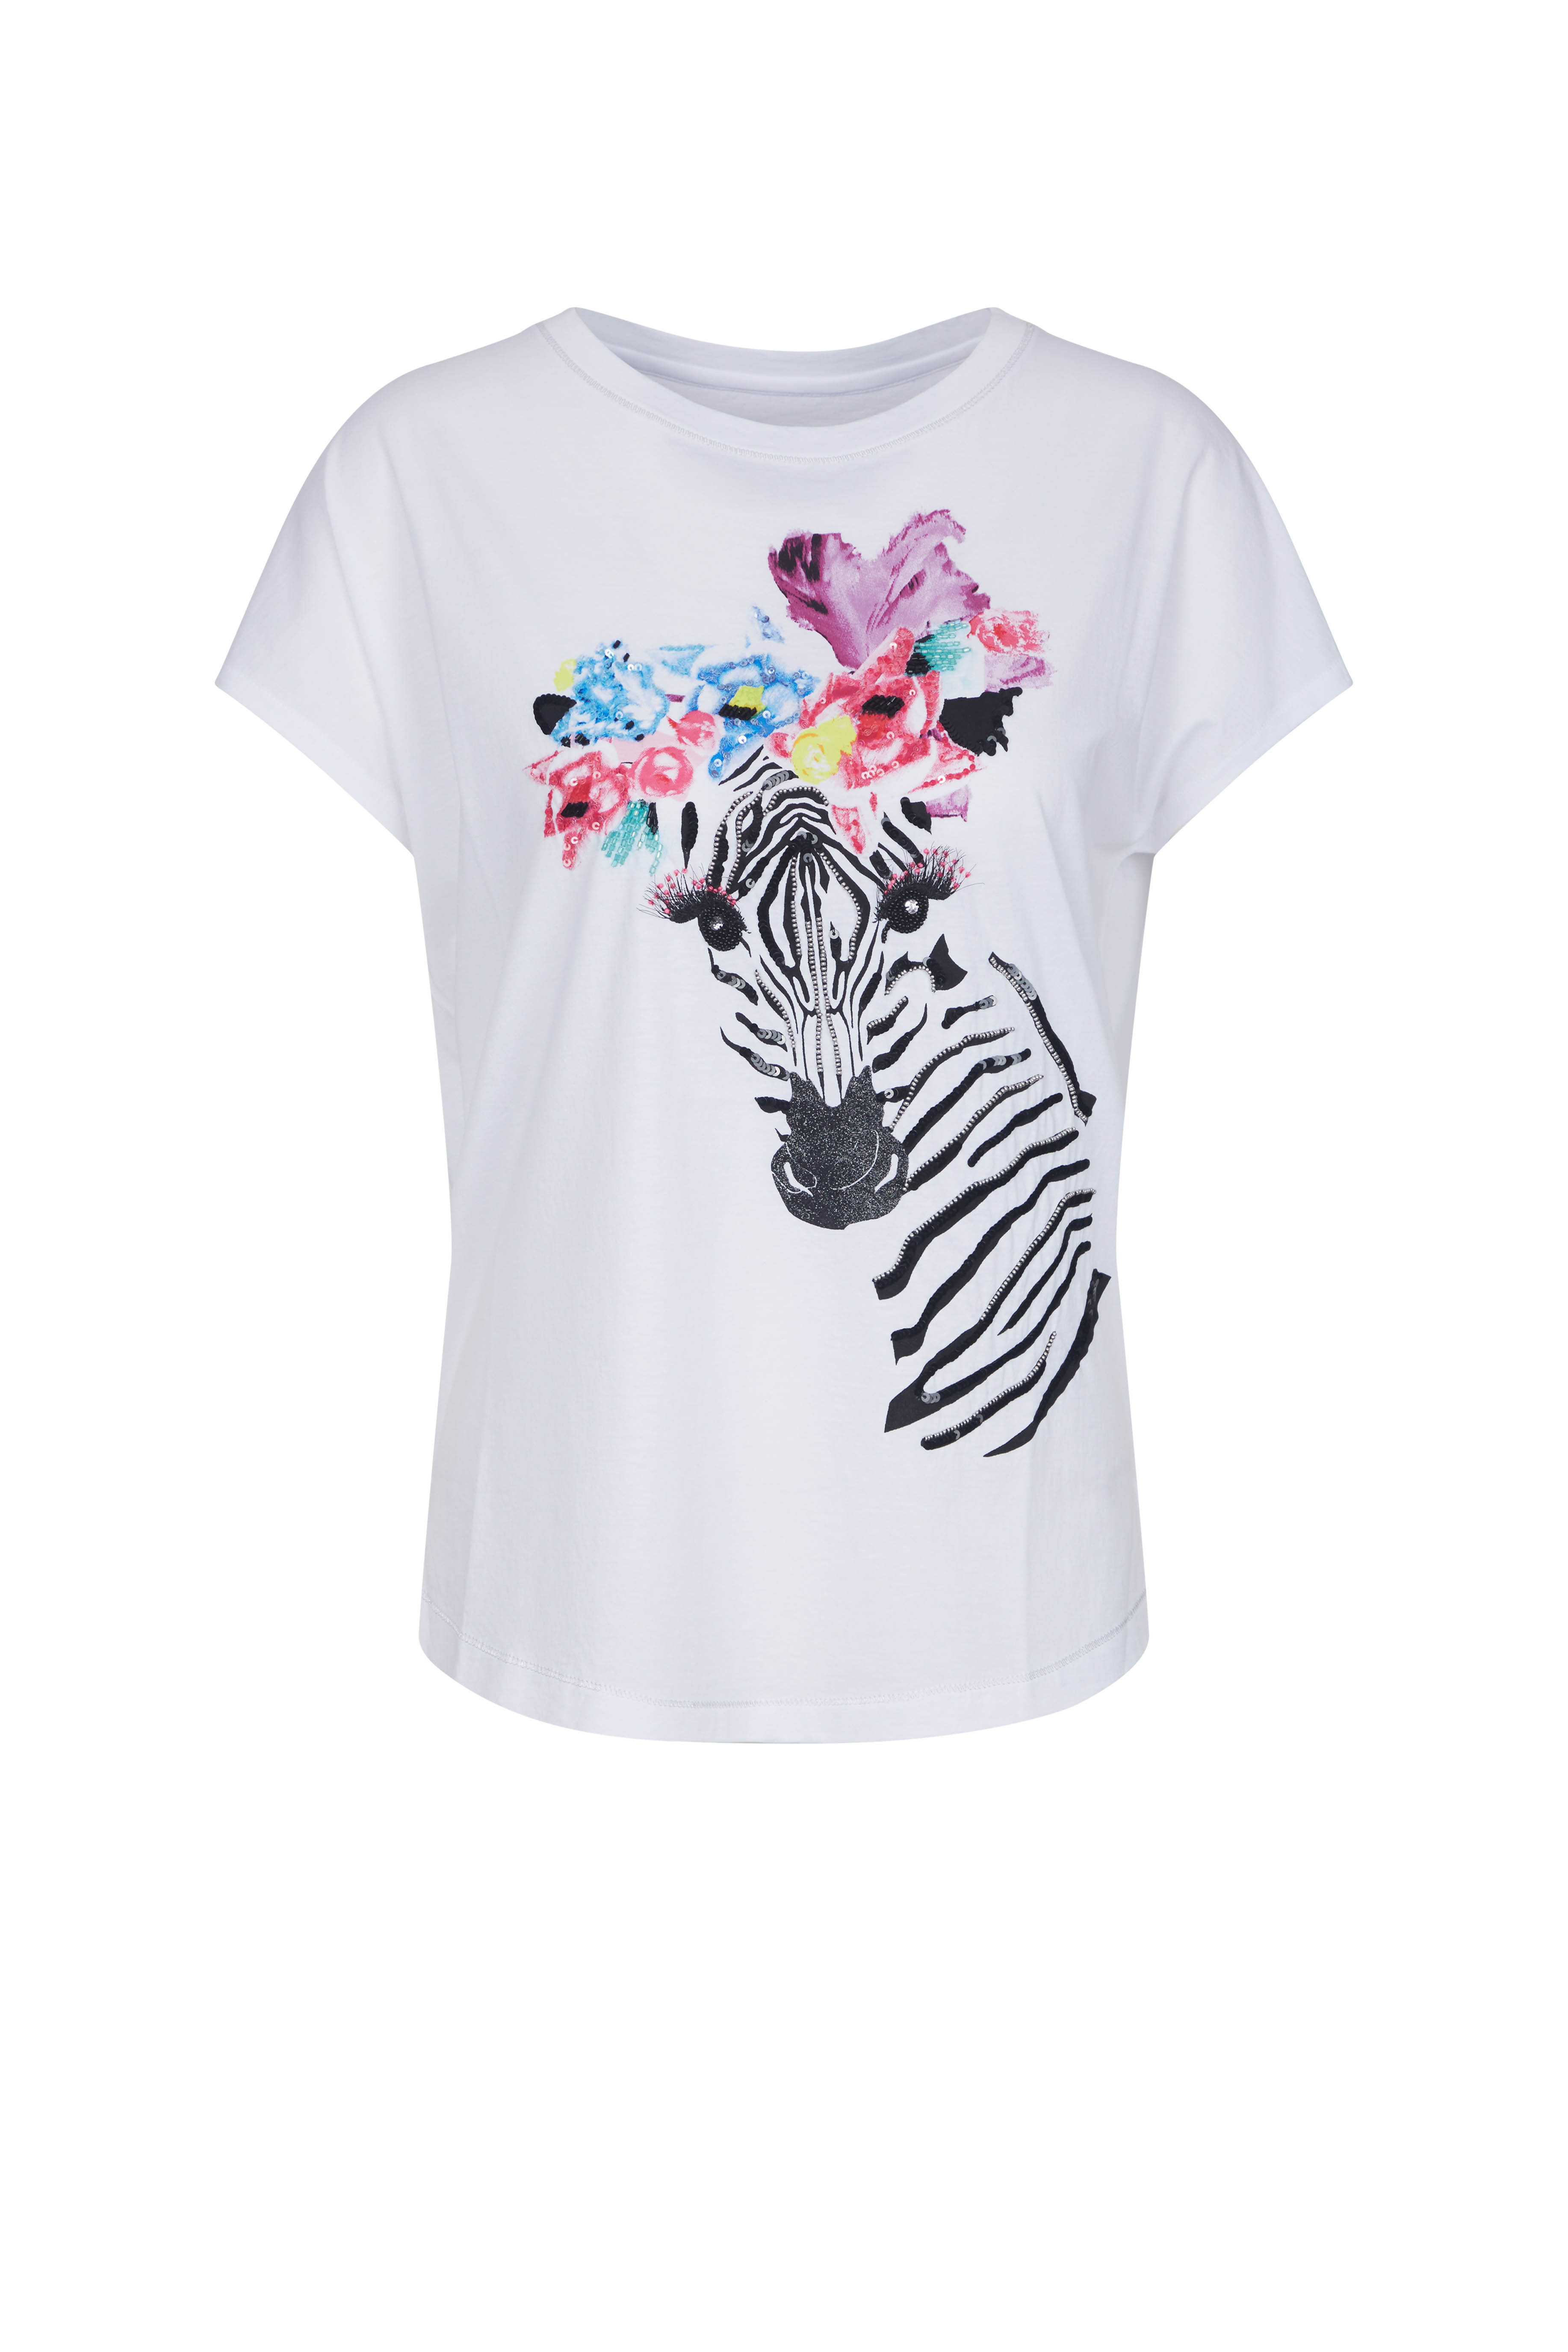 klasyczny biały t-shirt z krótkim rękawkiem z motywem zebry i kwiatów wiosna donomoda